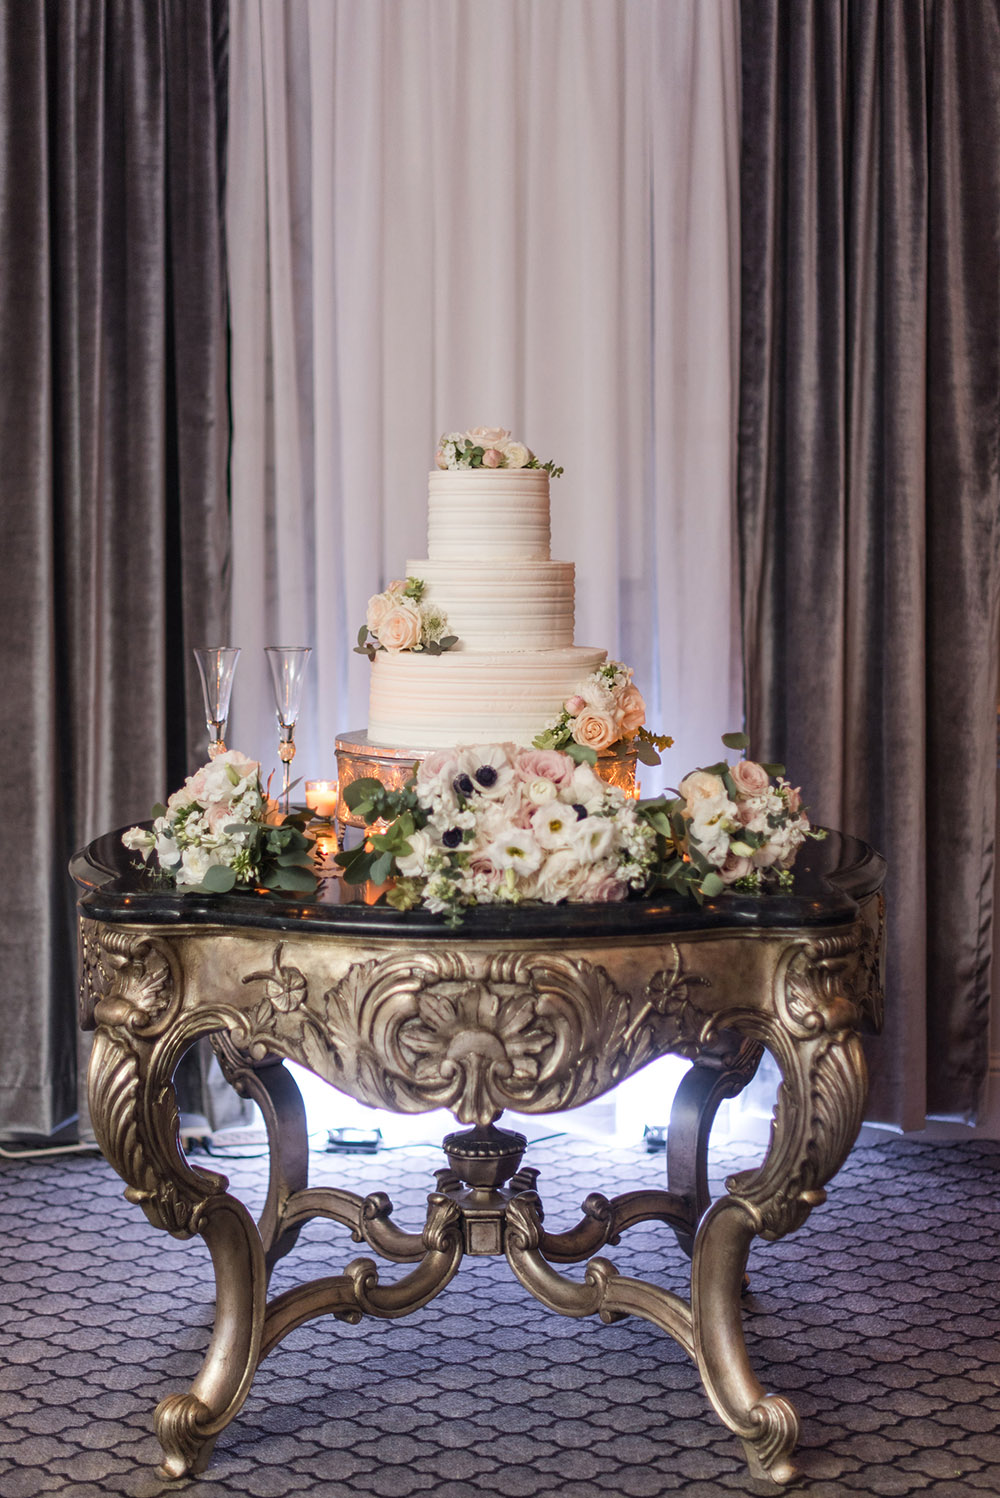 The wedding cake by Gambino's Bakery